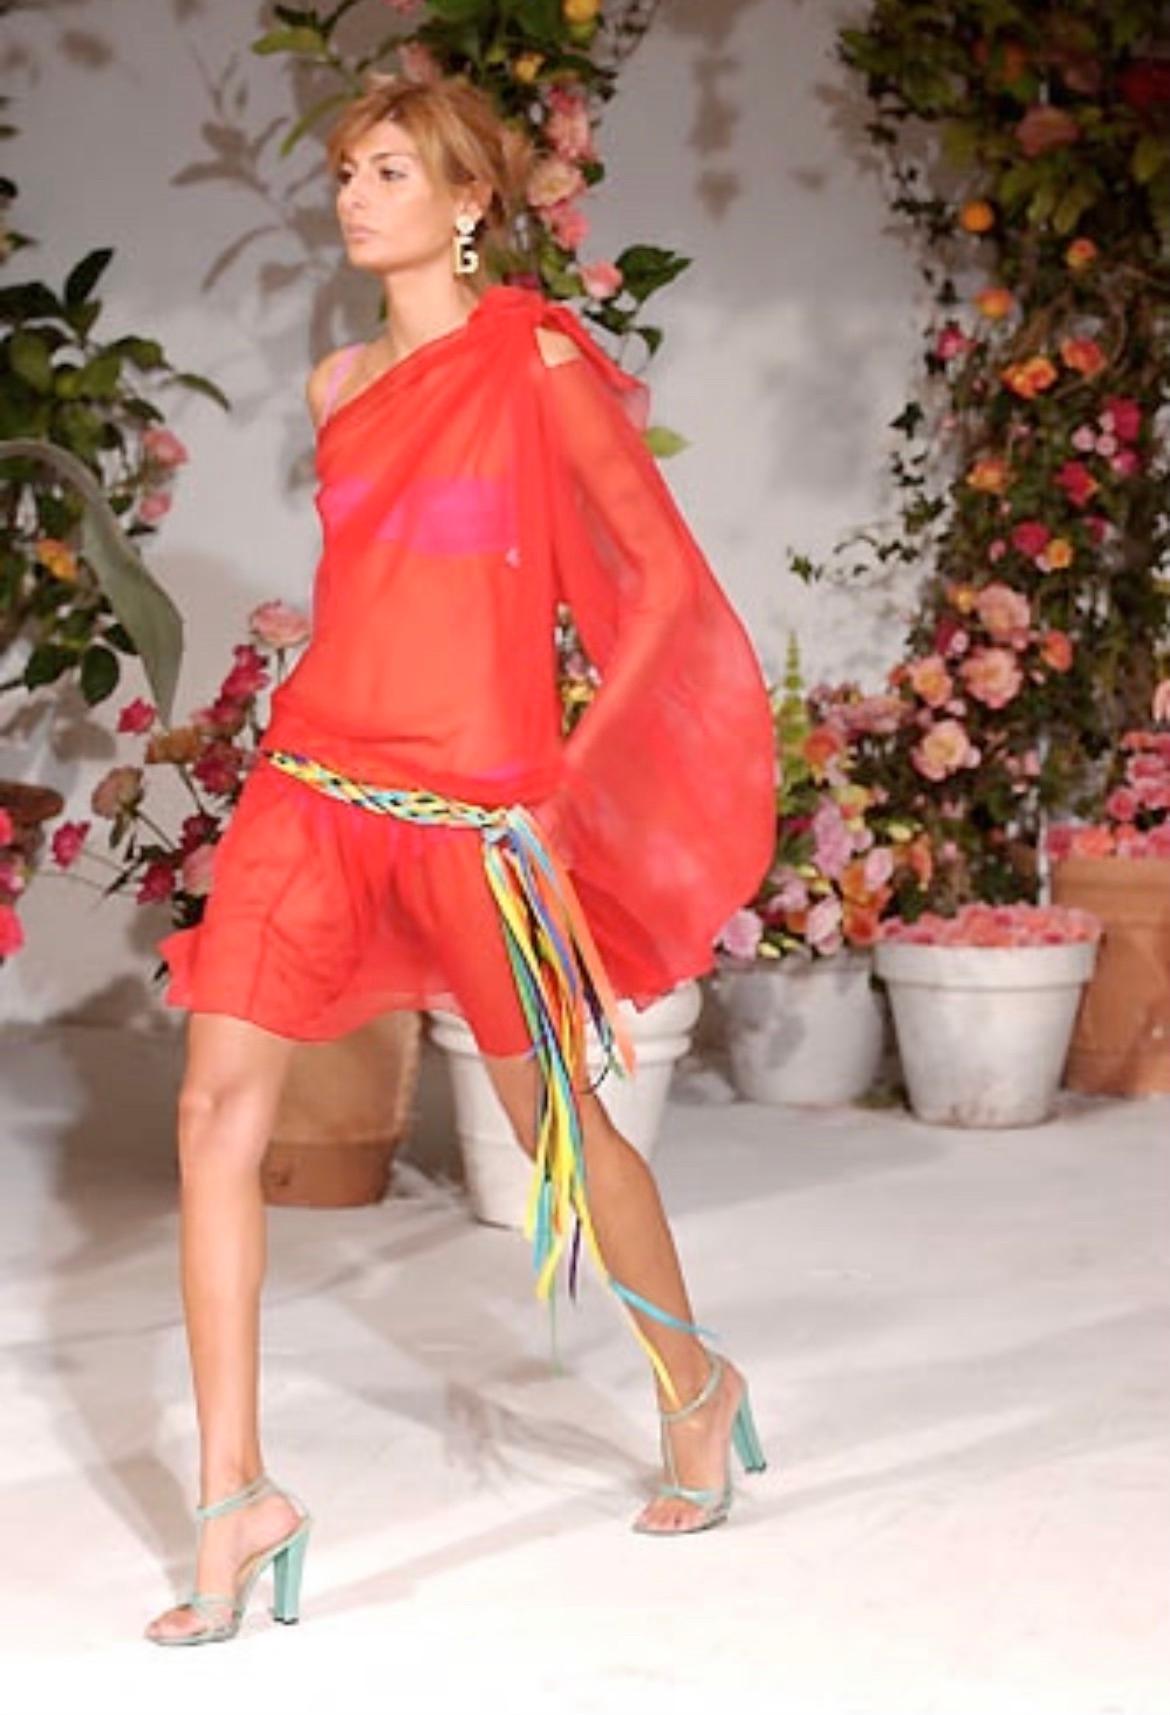 Ceinture en soie tissée multicolore Dolce & Gabbana. Issue de la collection printemps/été 2002, cette ceinture a fait ses débuts sur les podiums de la saison. La large ceinture est nouée et complétée par de longs rubans de soie qui tombent sur les